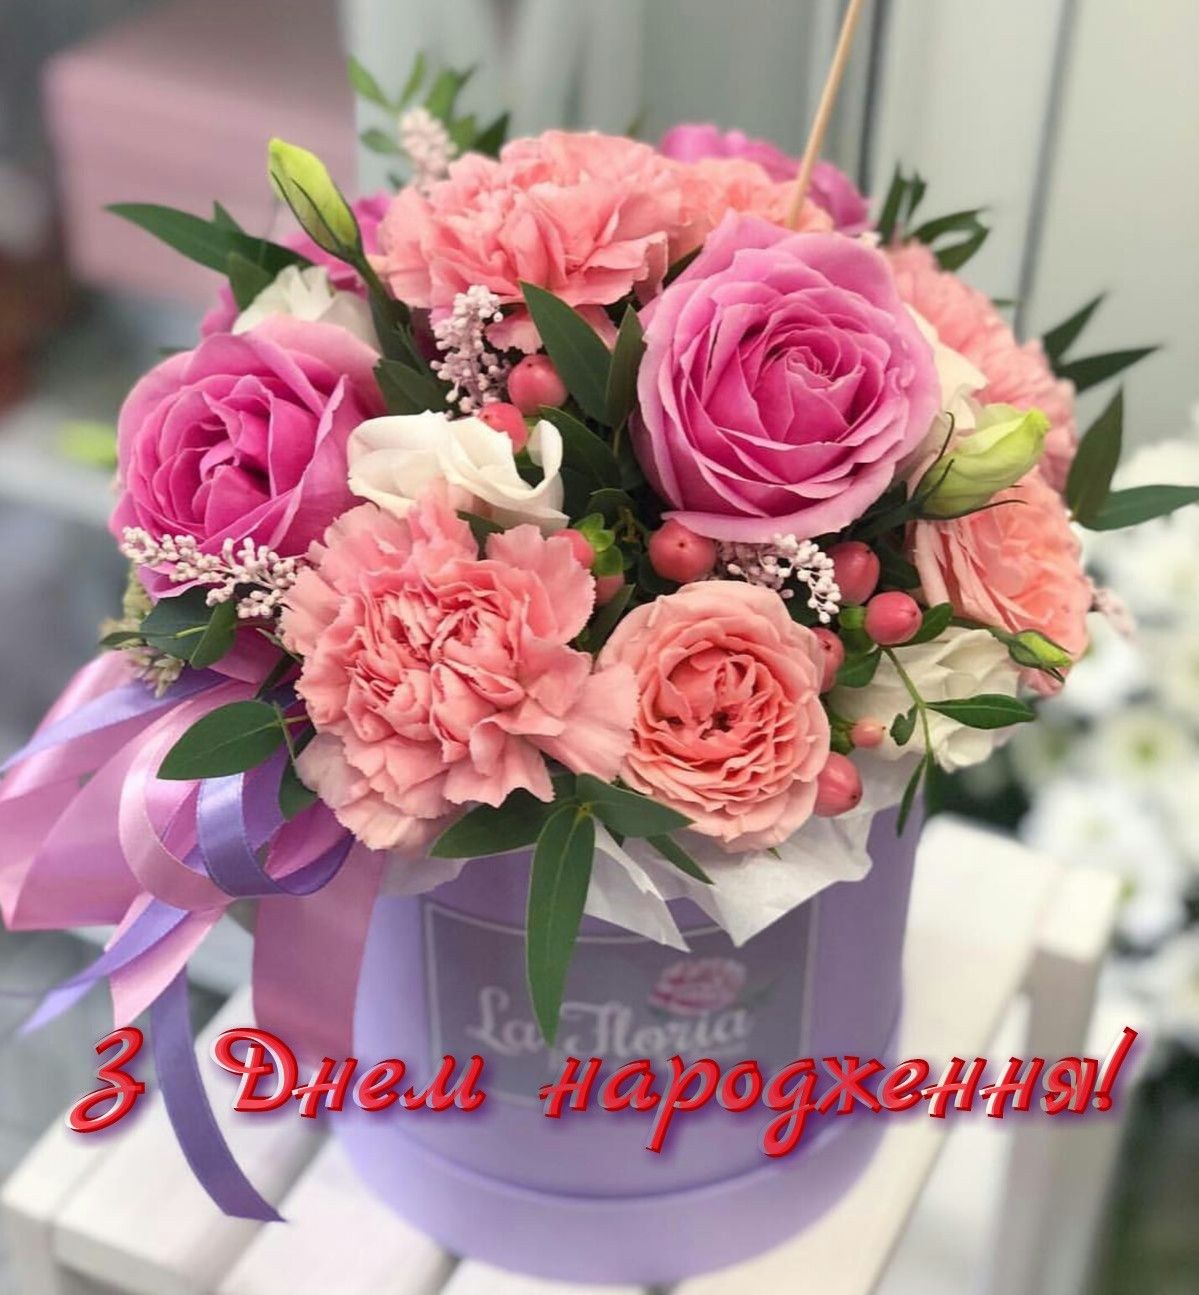 Привітання з днем народження чоловіку від дружини українською мовою
